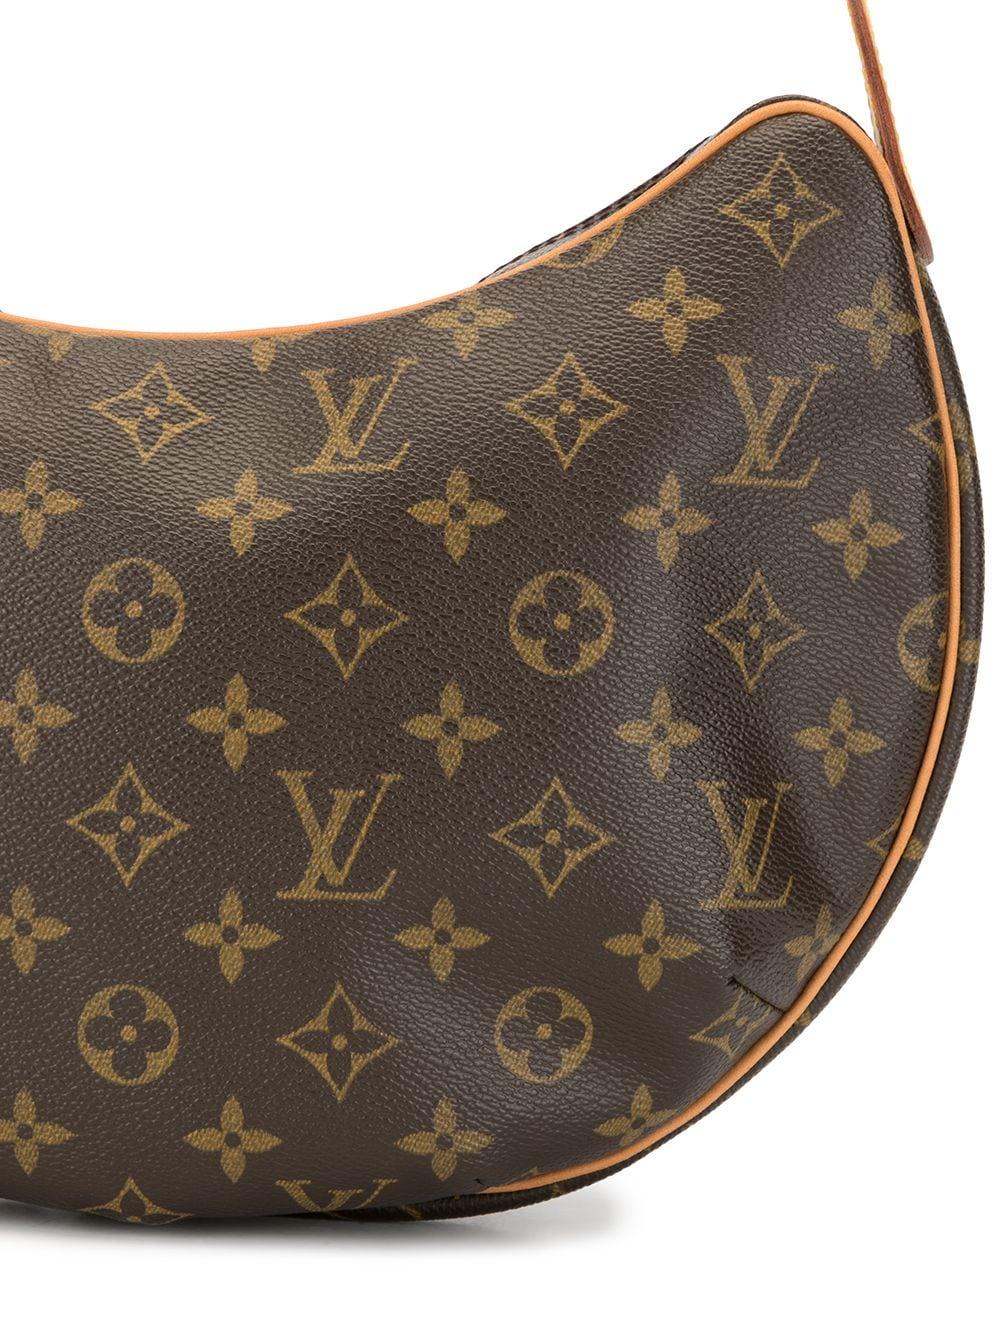 Louis Vuitton 2002 Pre-owned Monogram Looping mm Handbag - Brown